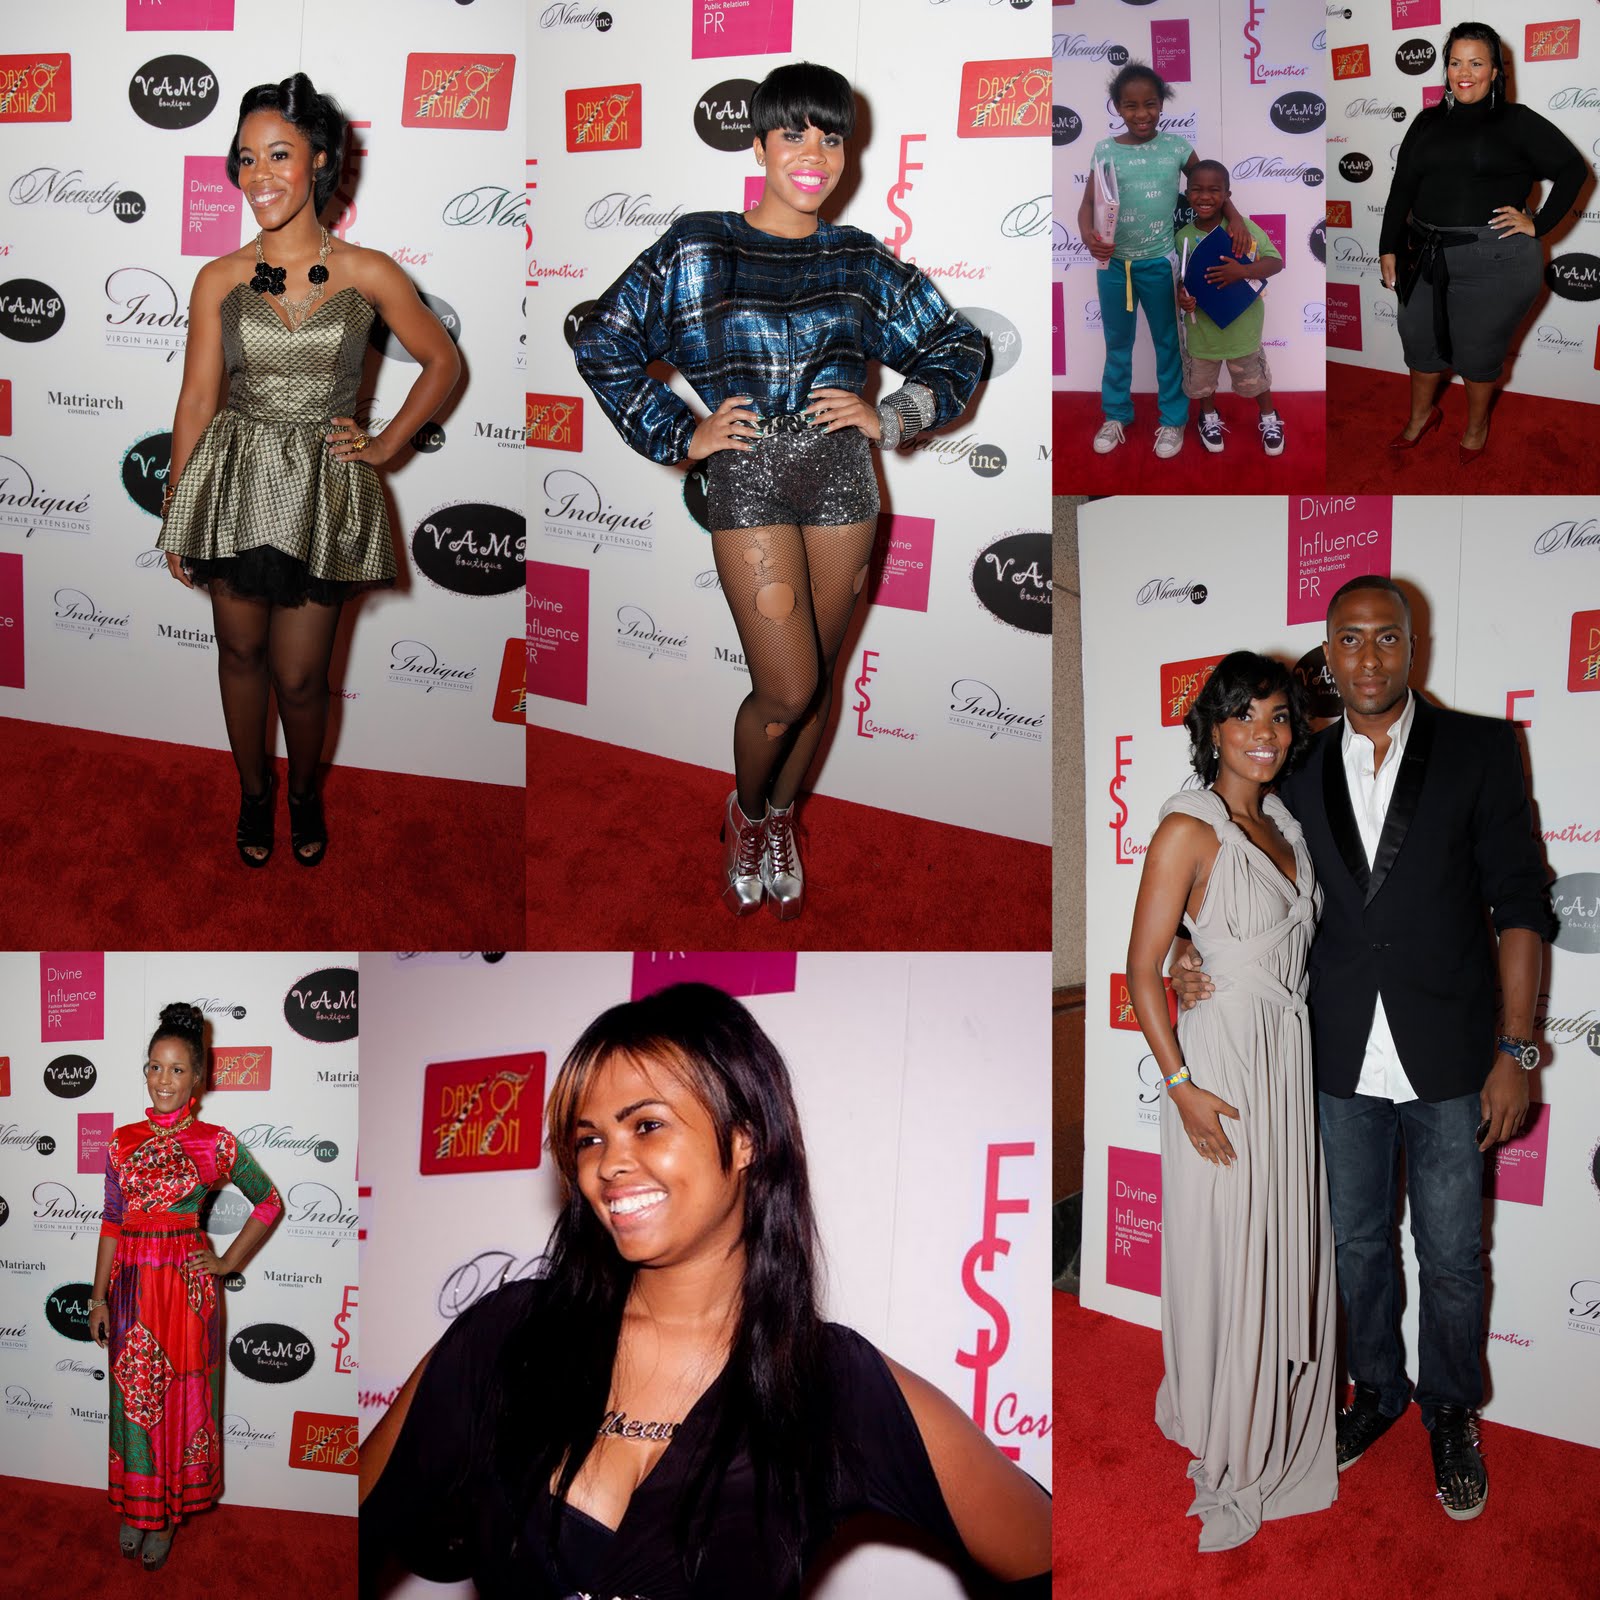 NBeauty Inc Celebrities for Charity Beauty & Fashion Show